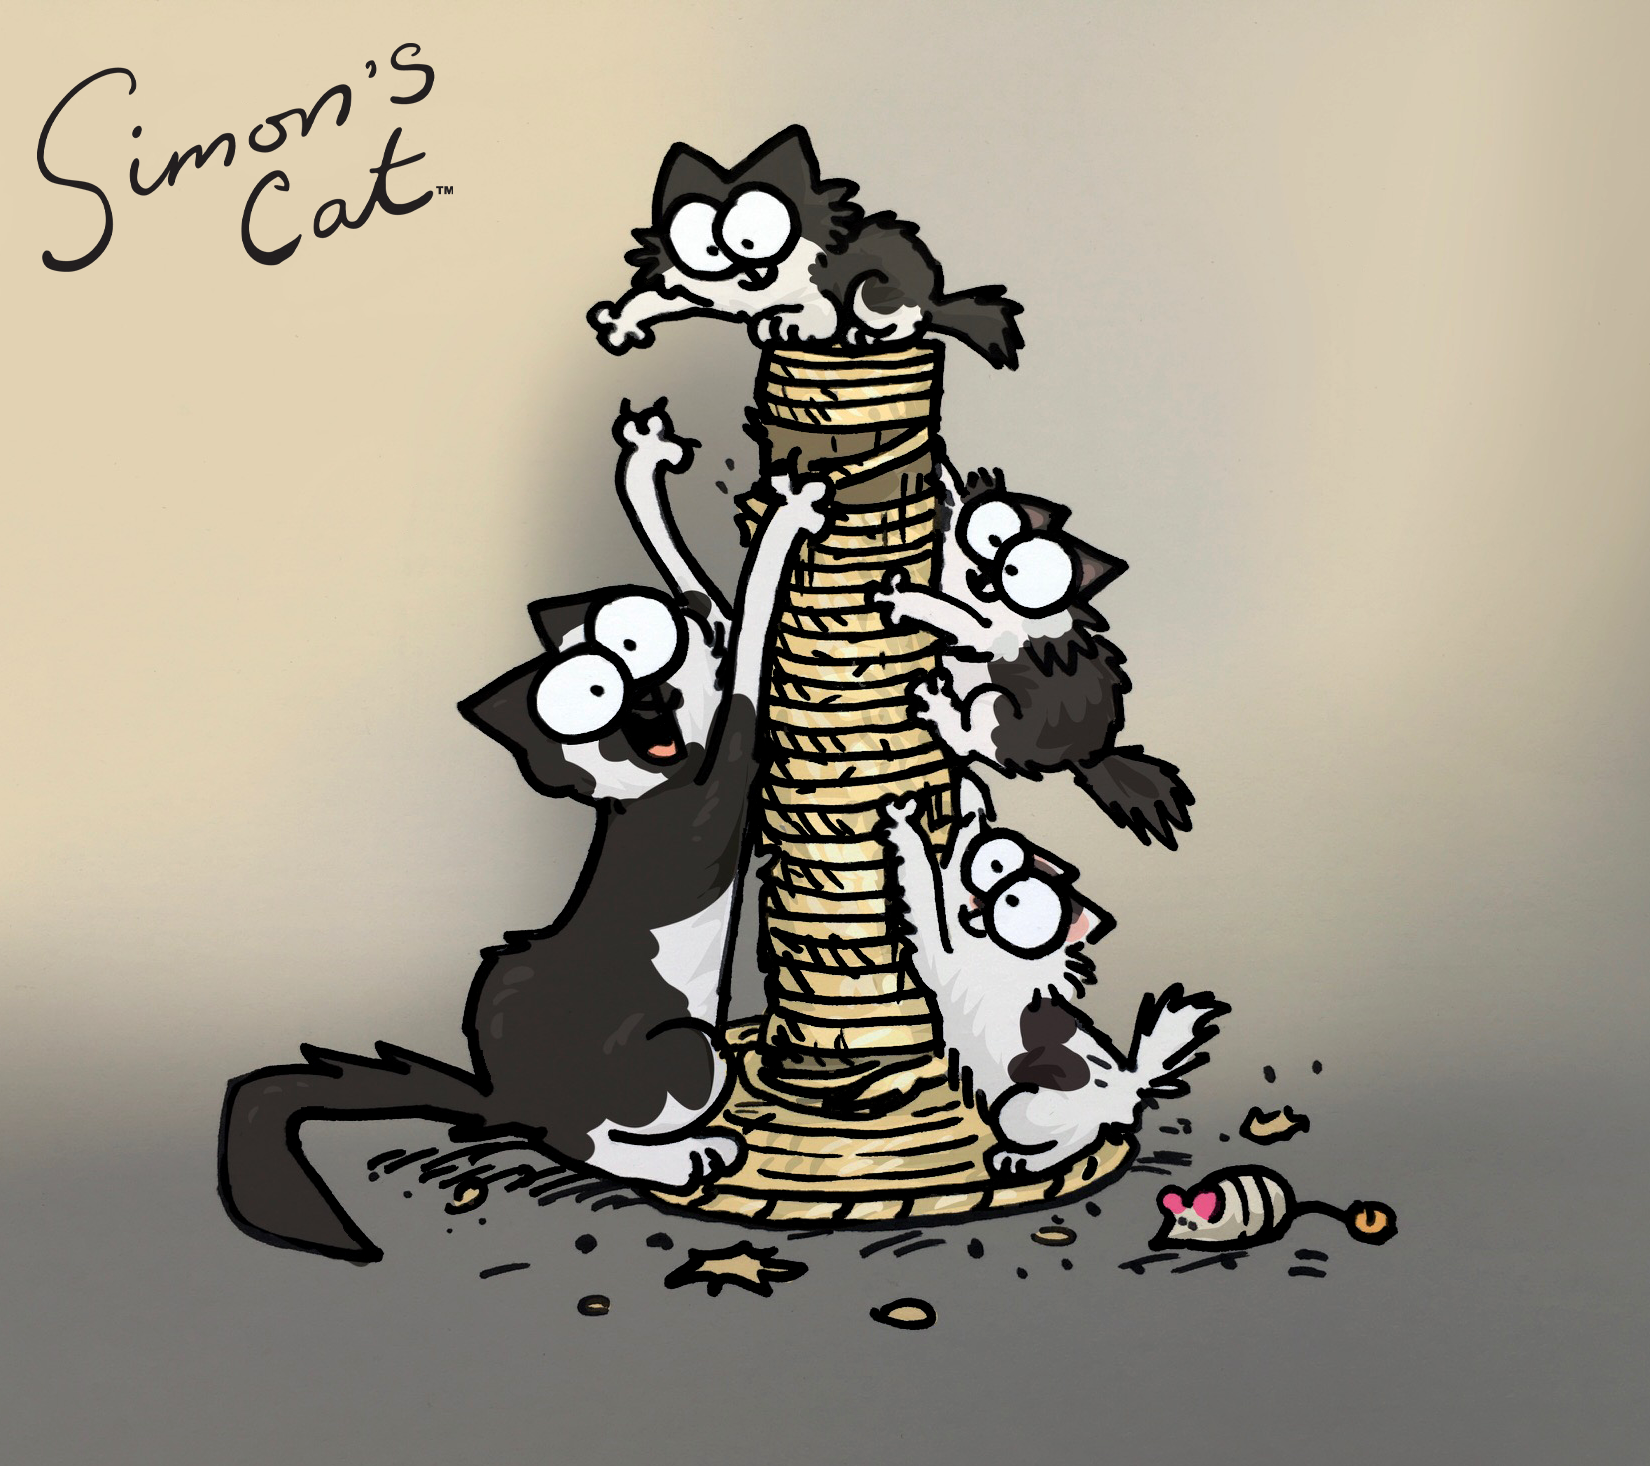 Le chat sponsor Princess et ses mignons chatons ont été dessinés par le célèbre illustrateur Simon Tofield